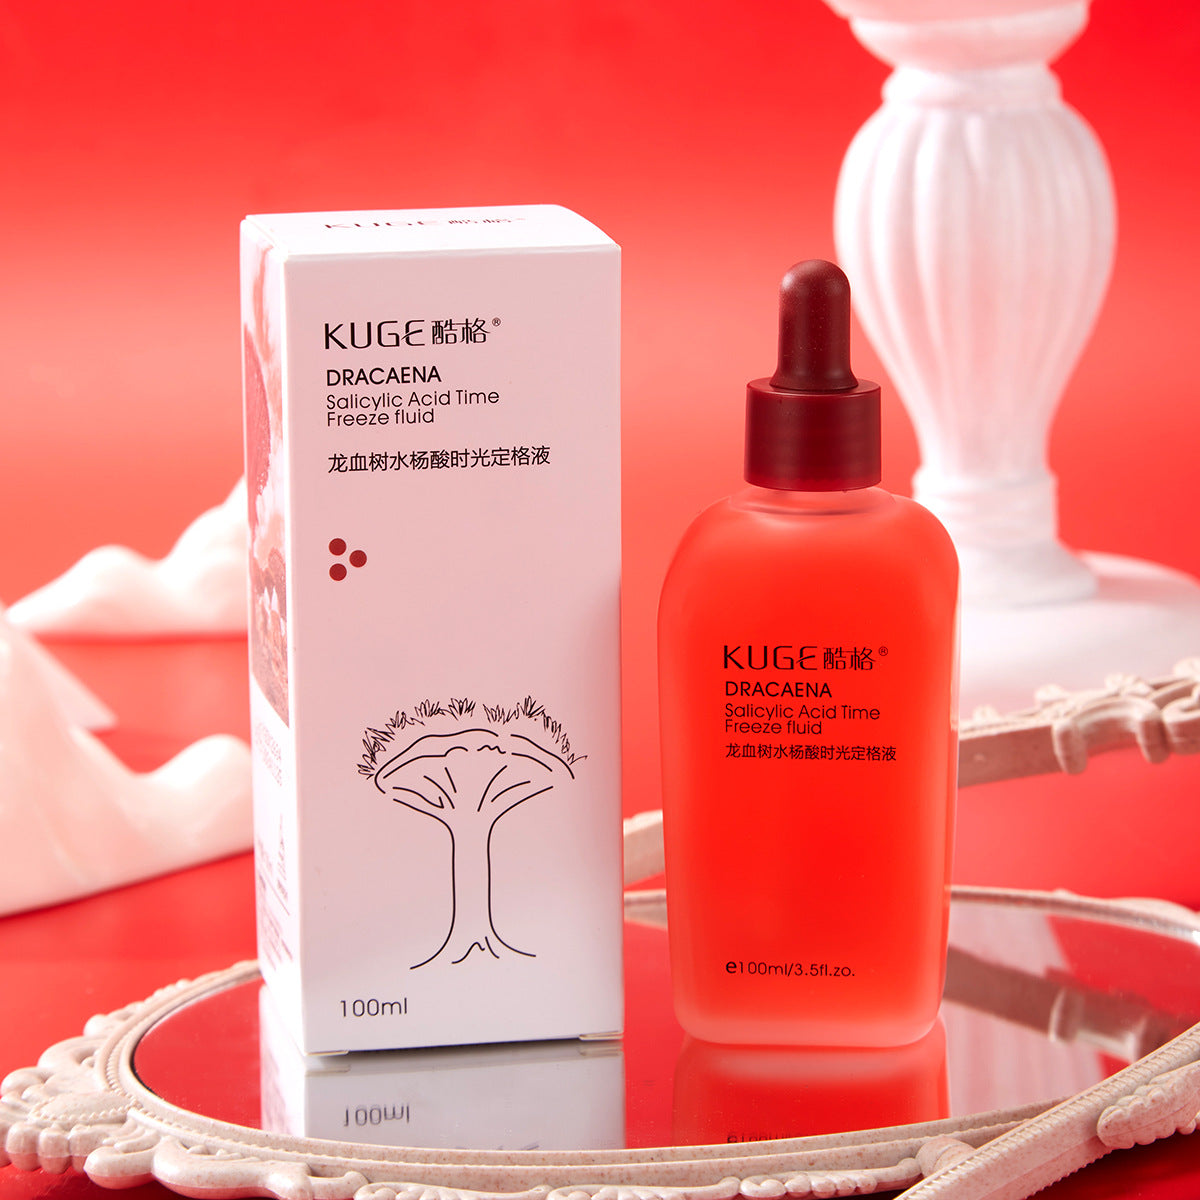 Locion de Ácido Salicílico para exfoliar, limpiar poros y tratar Acné - Tokio Beauty Skin